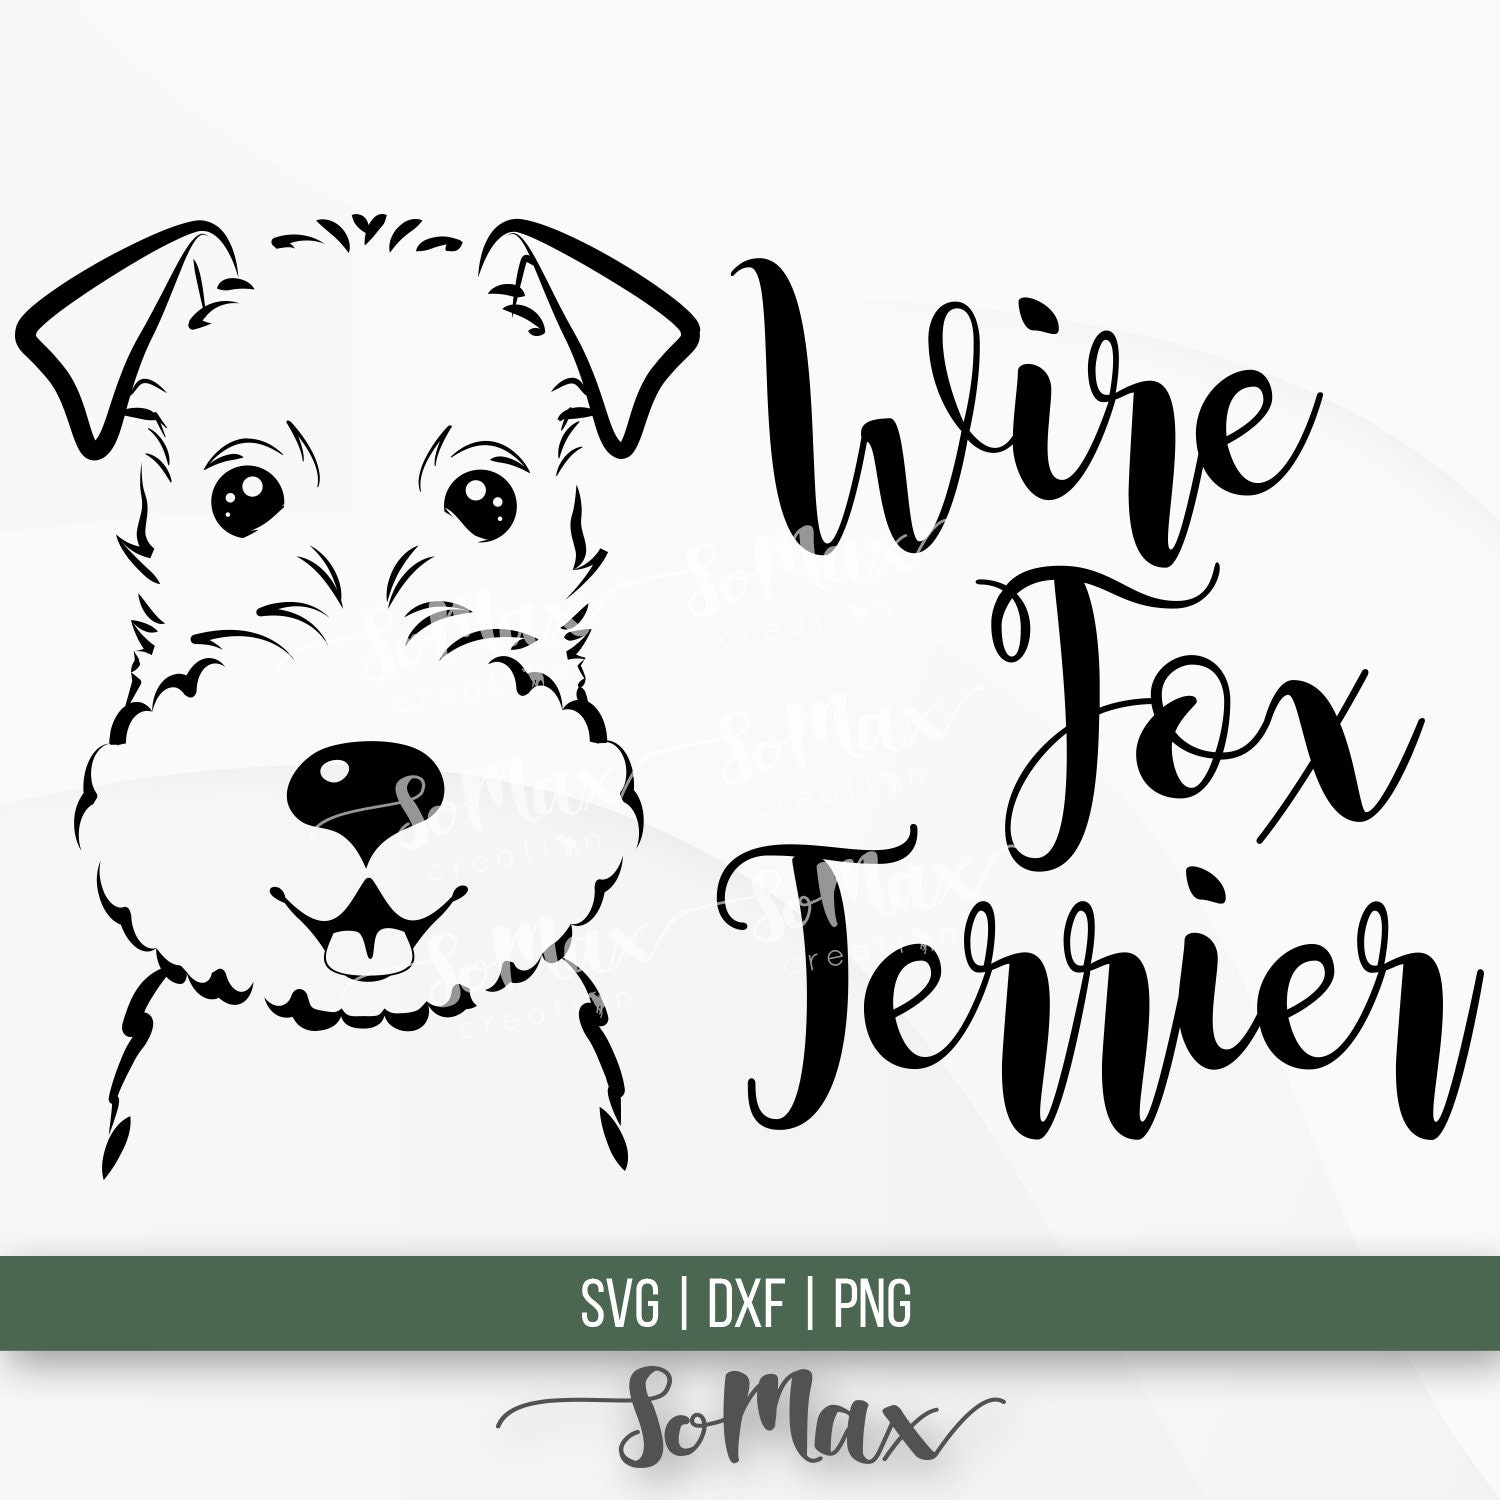 Wire Fox Terrier Svg Wire Fox Terrier DXF Wire Fox Terrier | Etsy